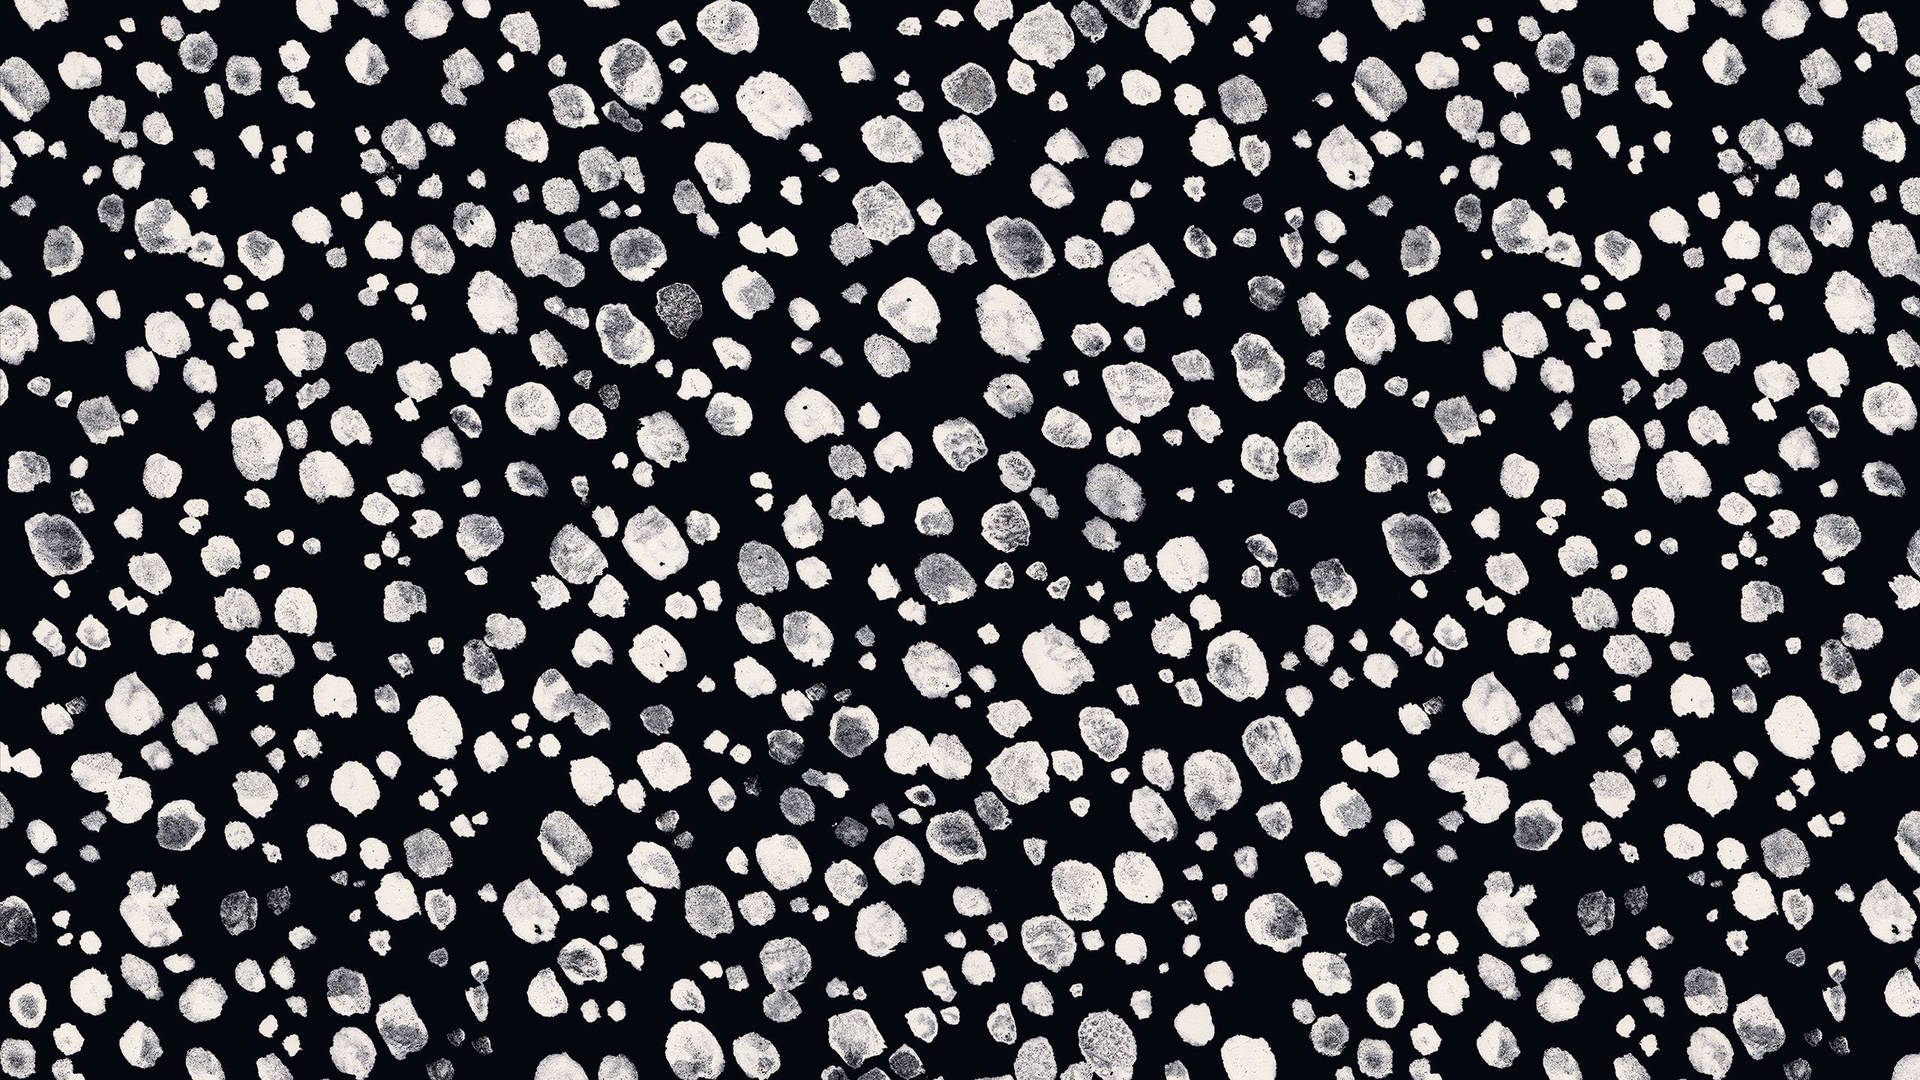 Caption: Intriguing Black Dot iPhone Crystal Landscape Image Wallpaper